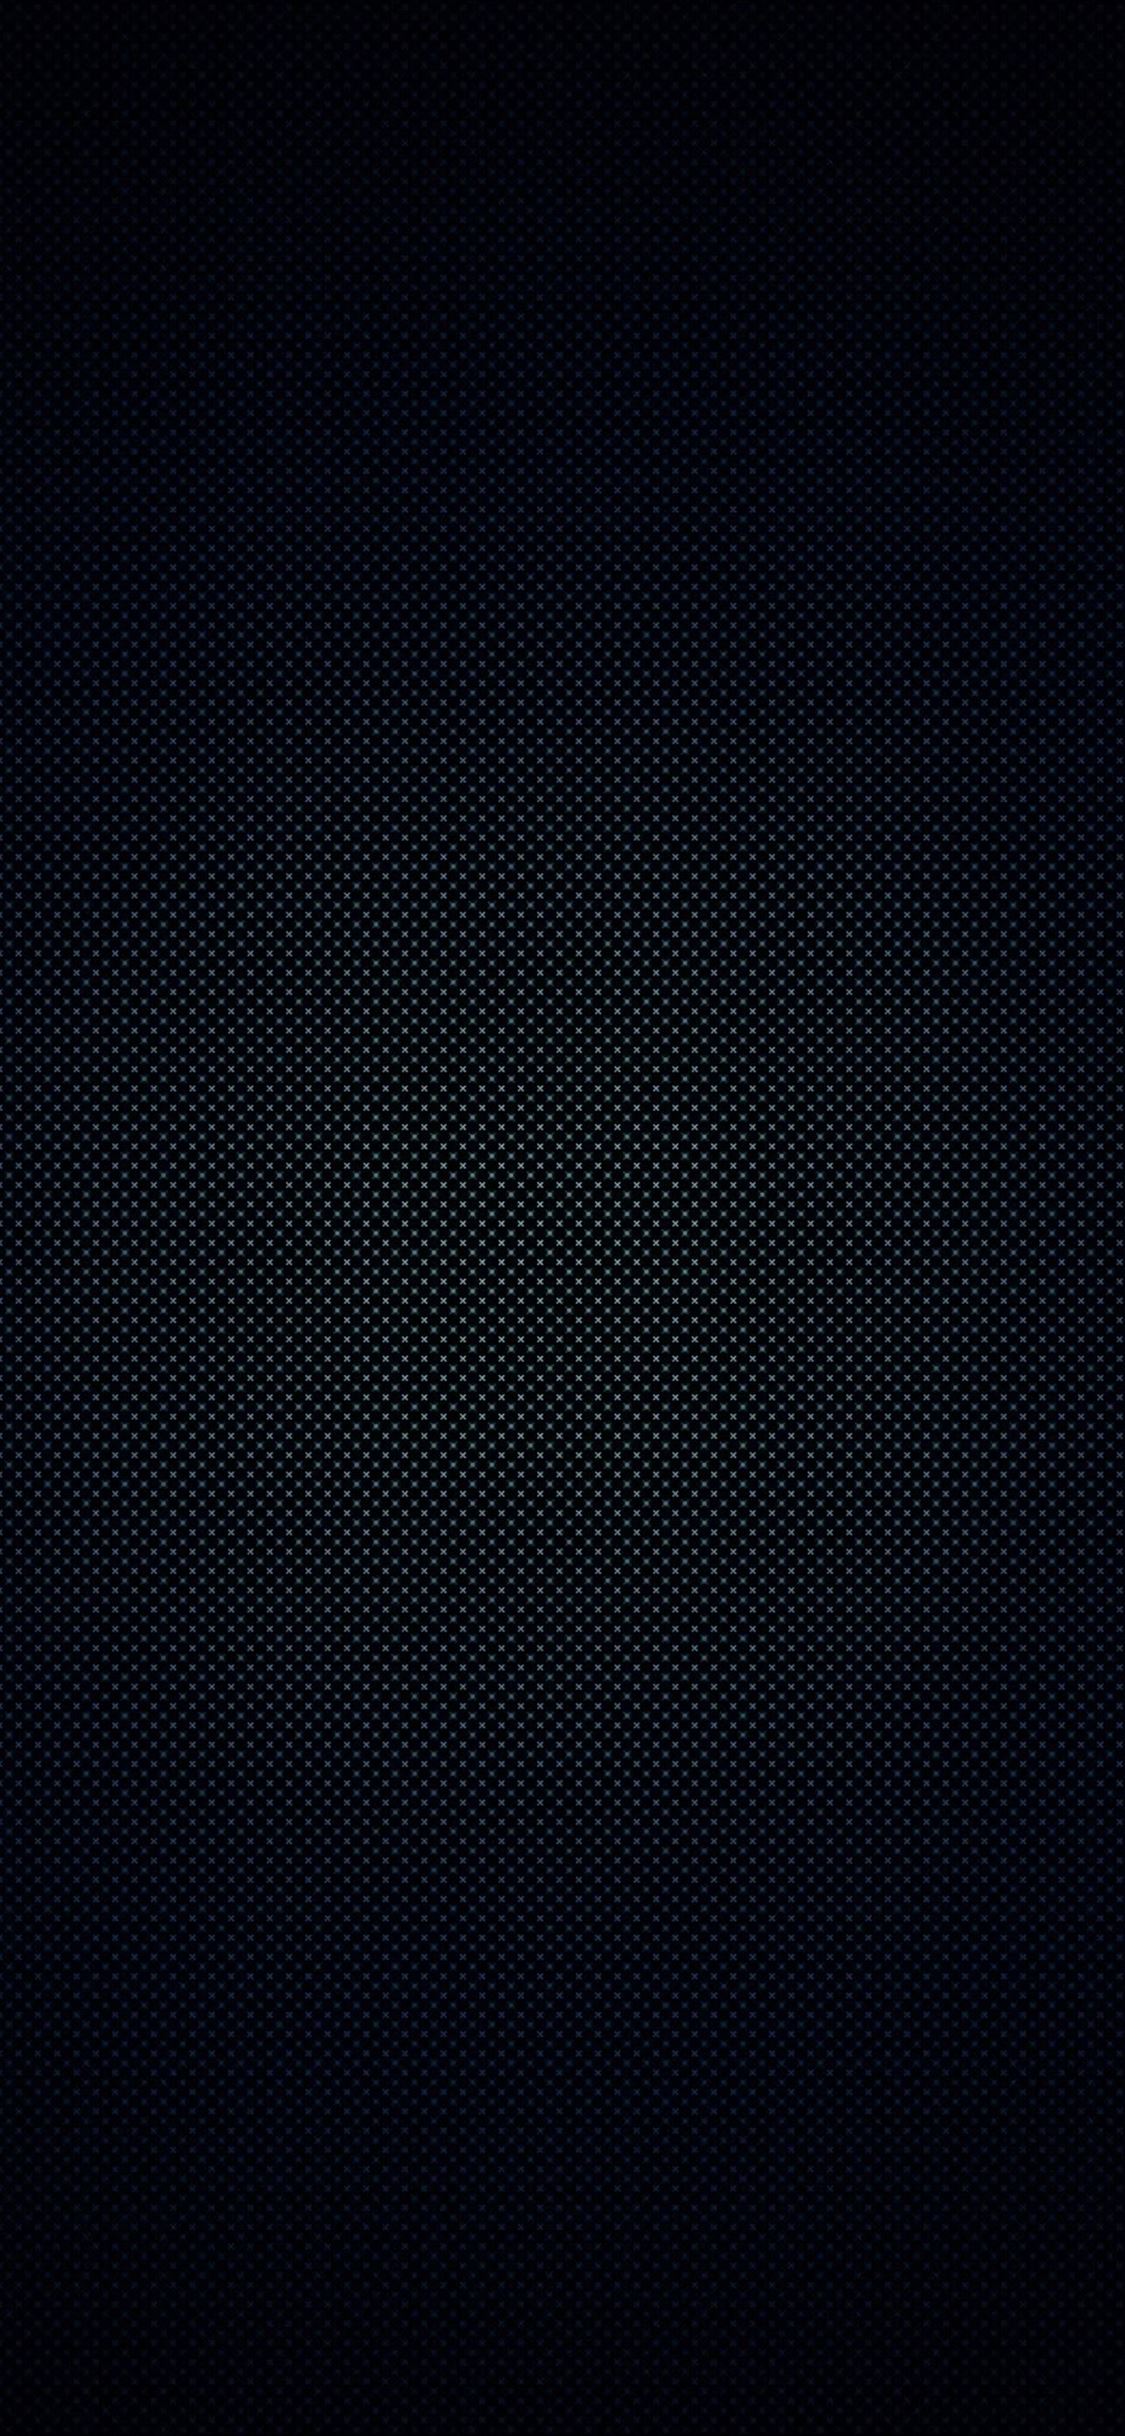 Dark Texture iPhone wallpaper 